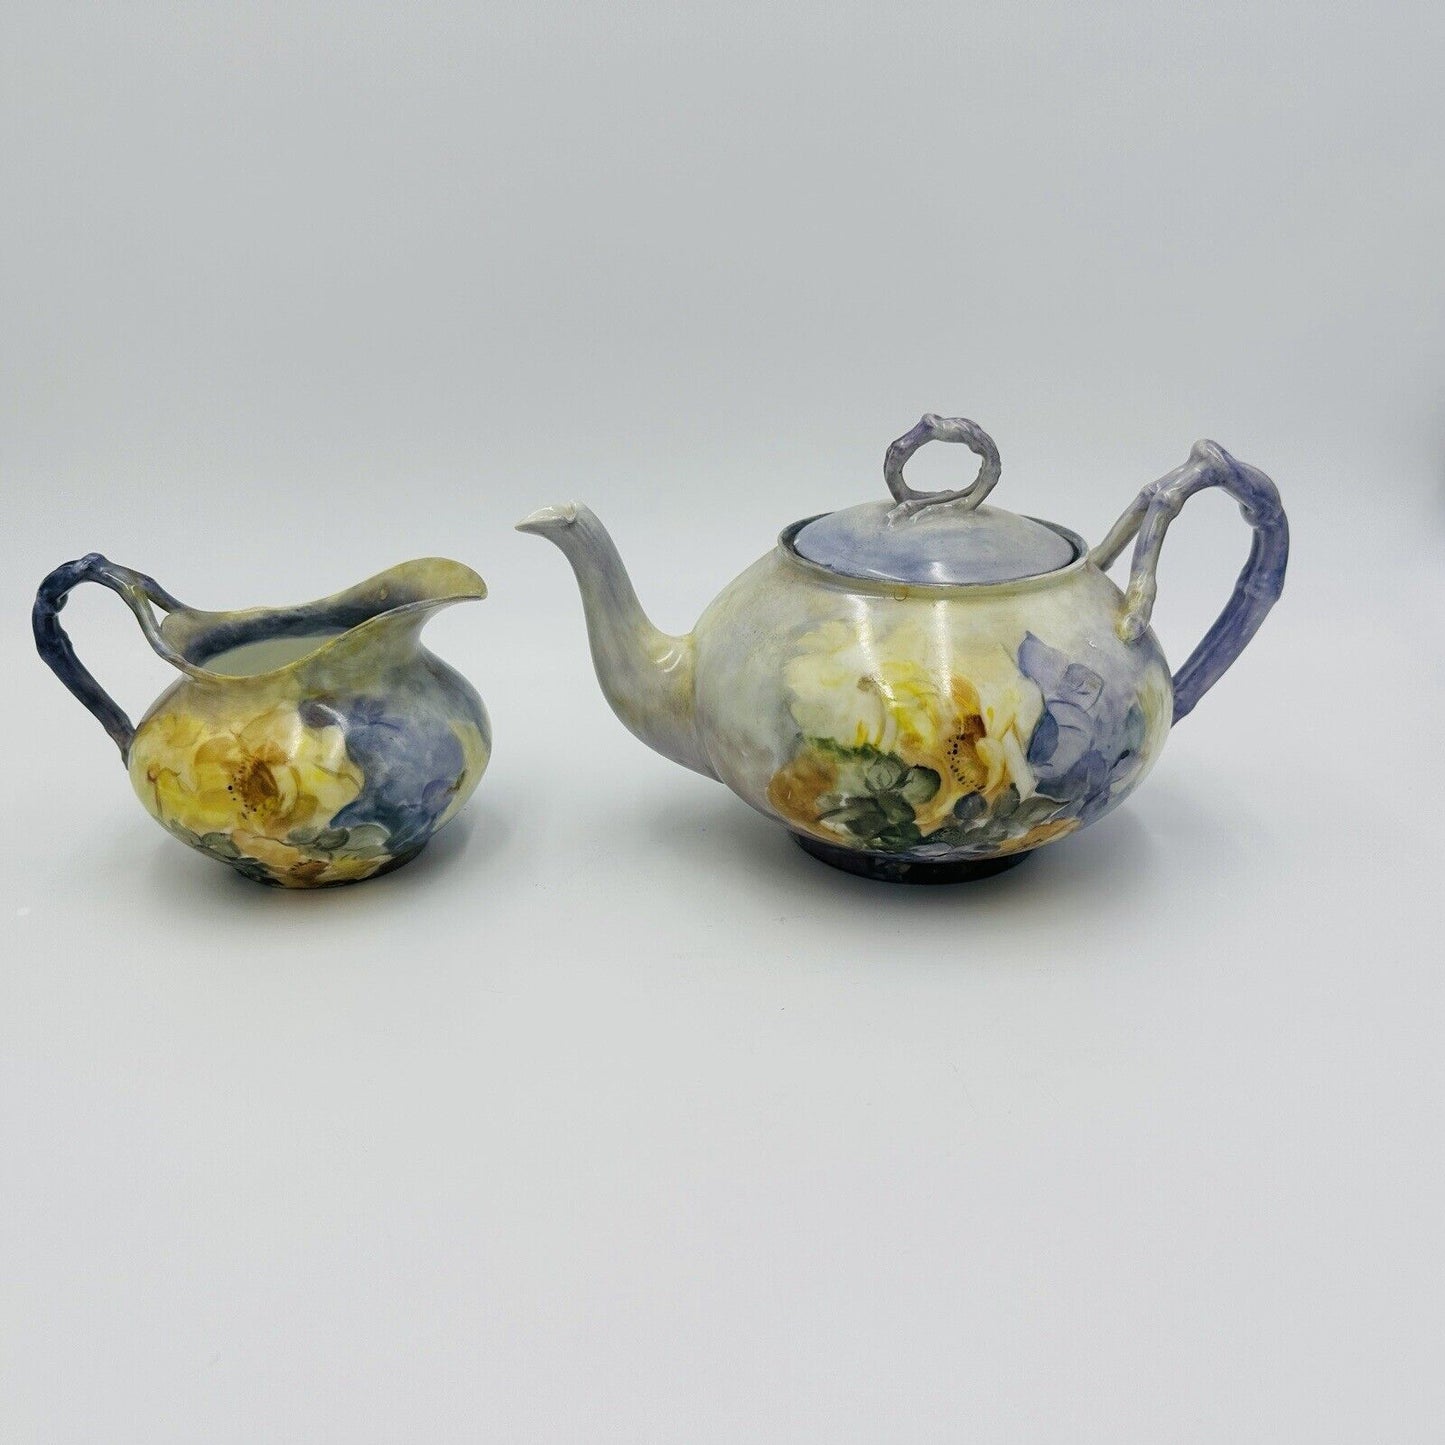 Antique J P L porcelain J Pouyat Limoges France purple yellow teapot creamer